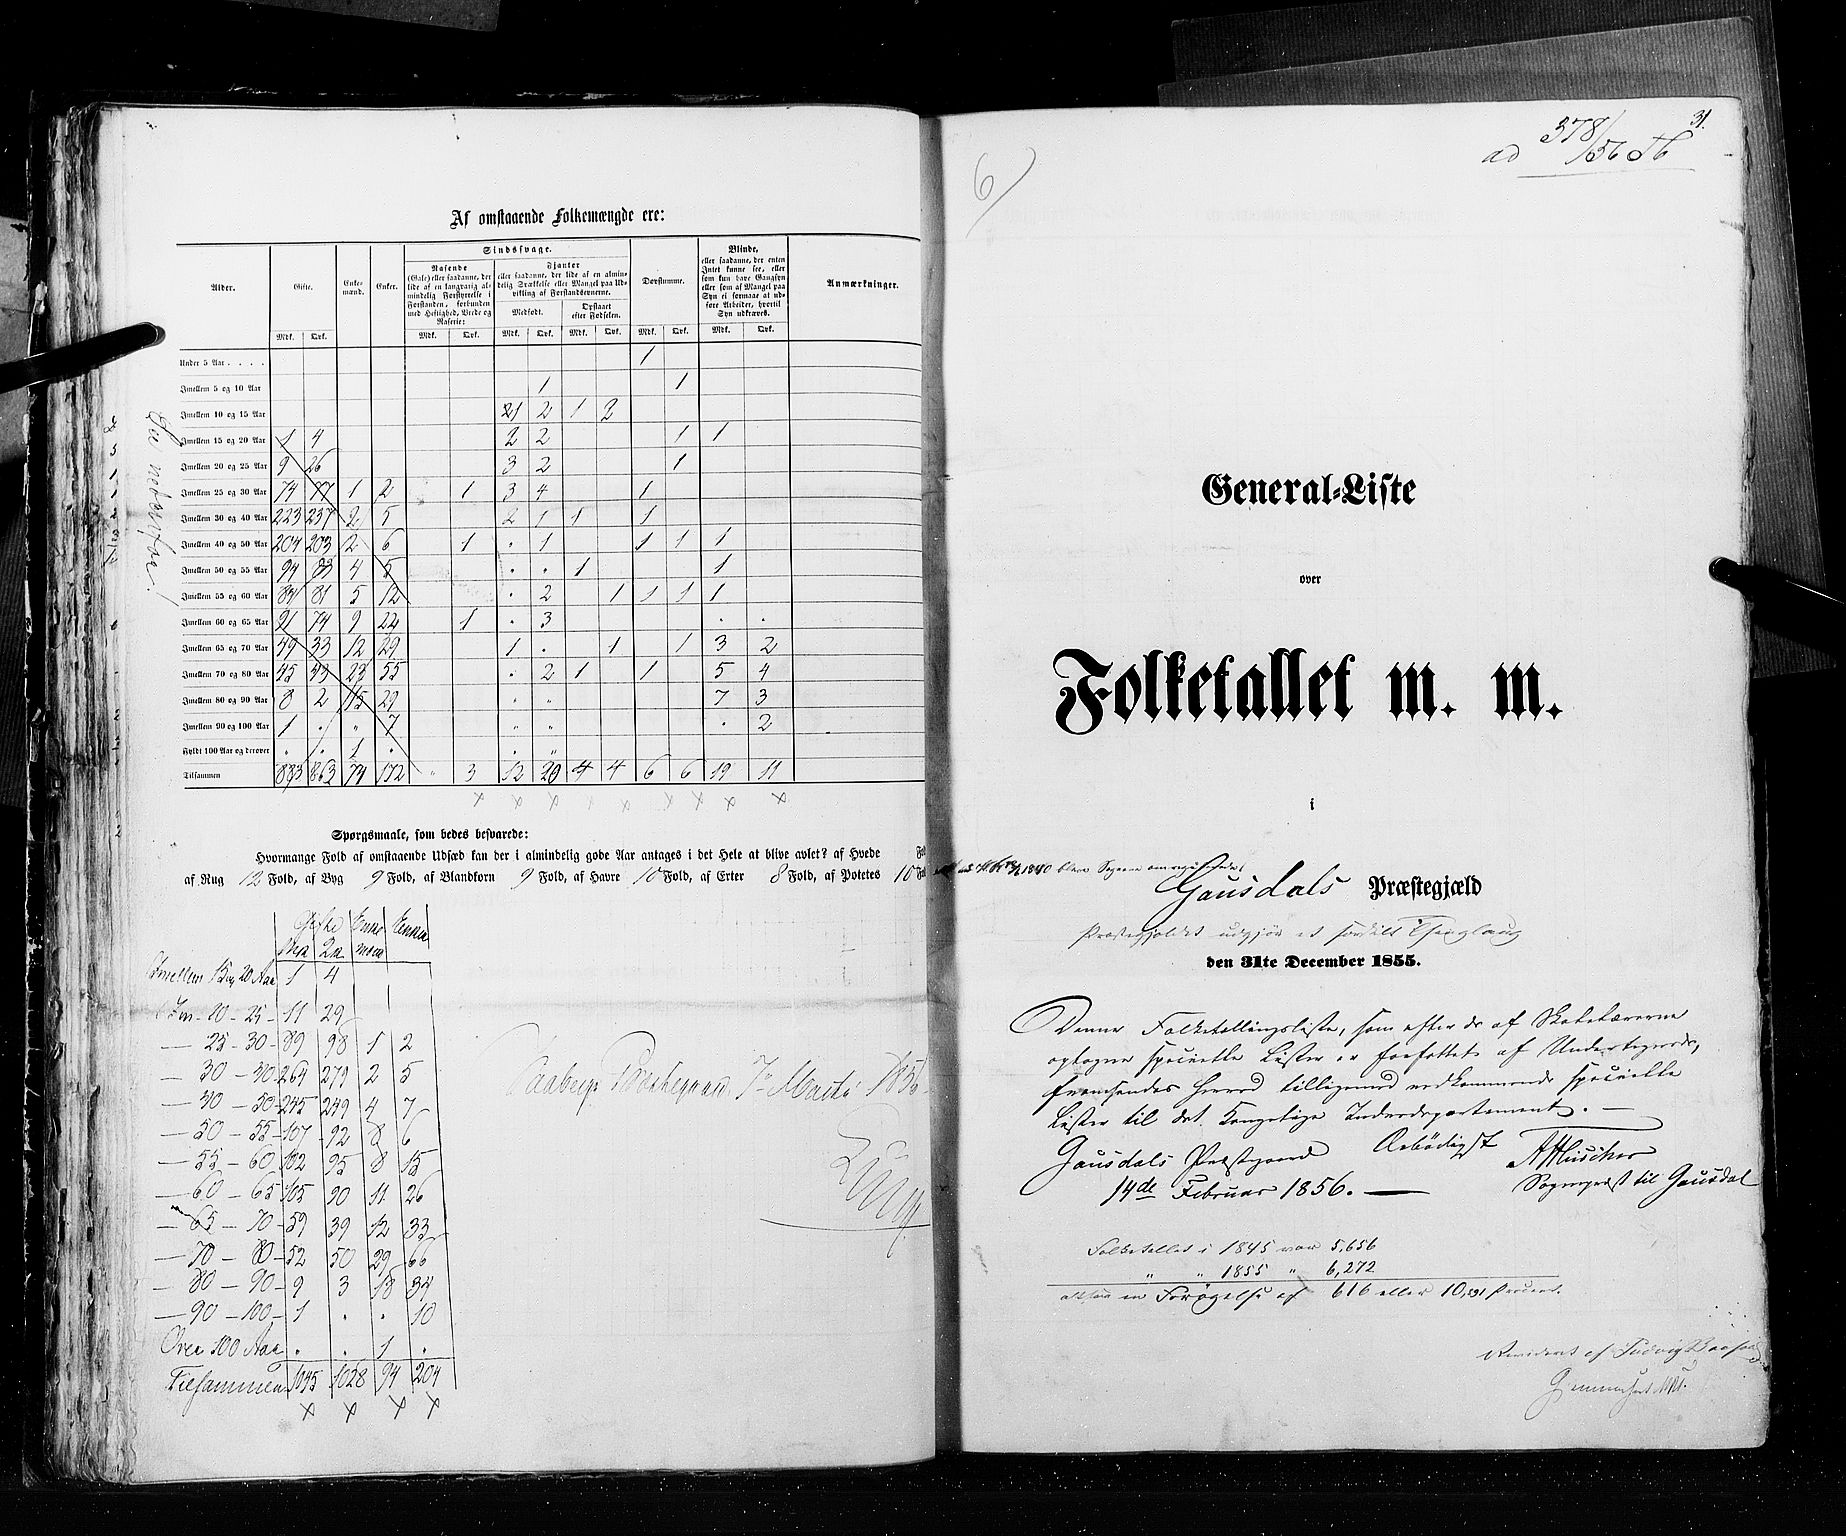 RA, Folketellingen 1855, bind 2: Kristians amt, Buskerud amt og Jarlsberg og Larvik amt, 1855, s. 31